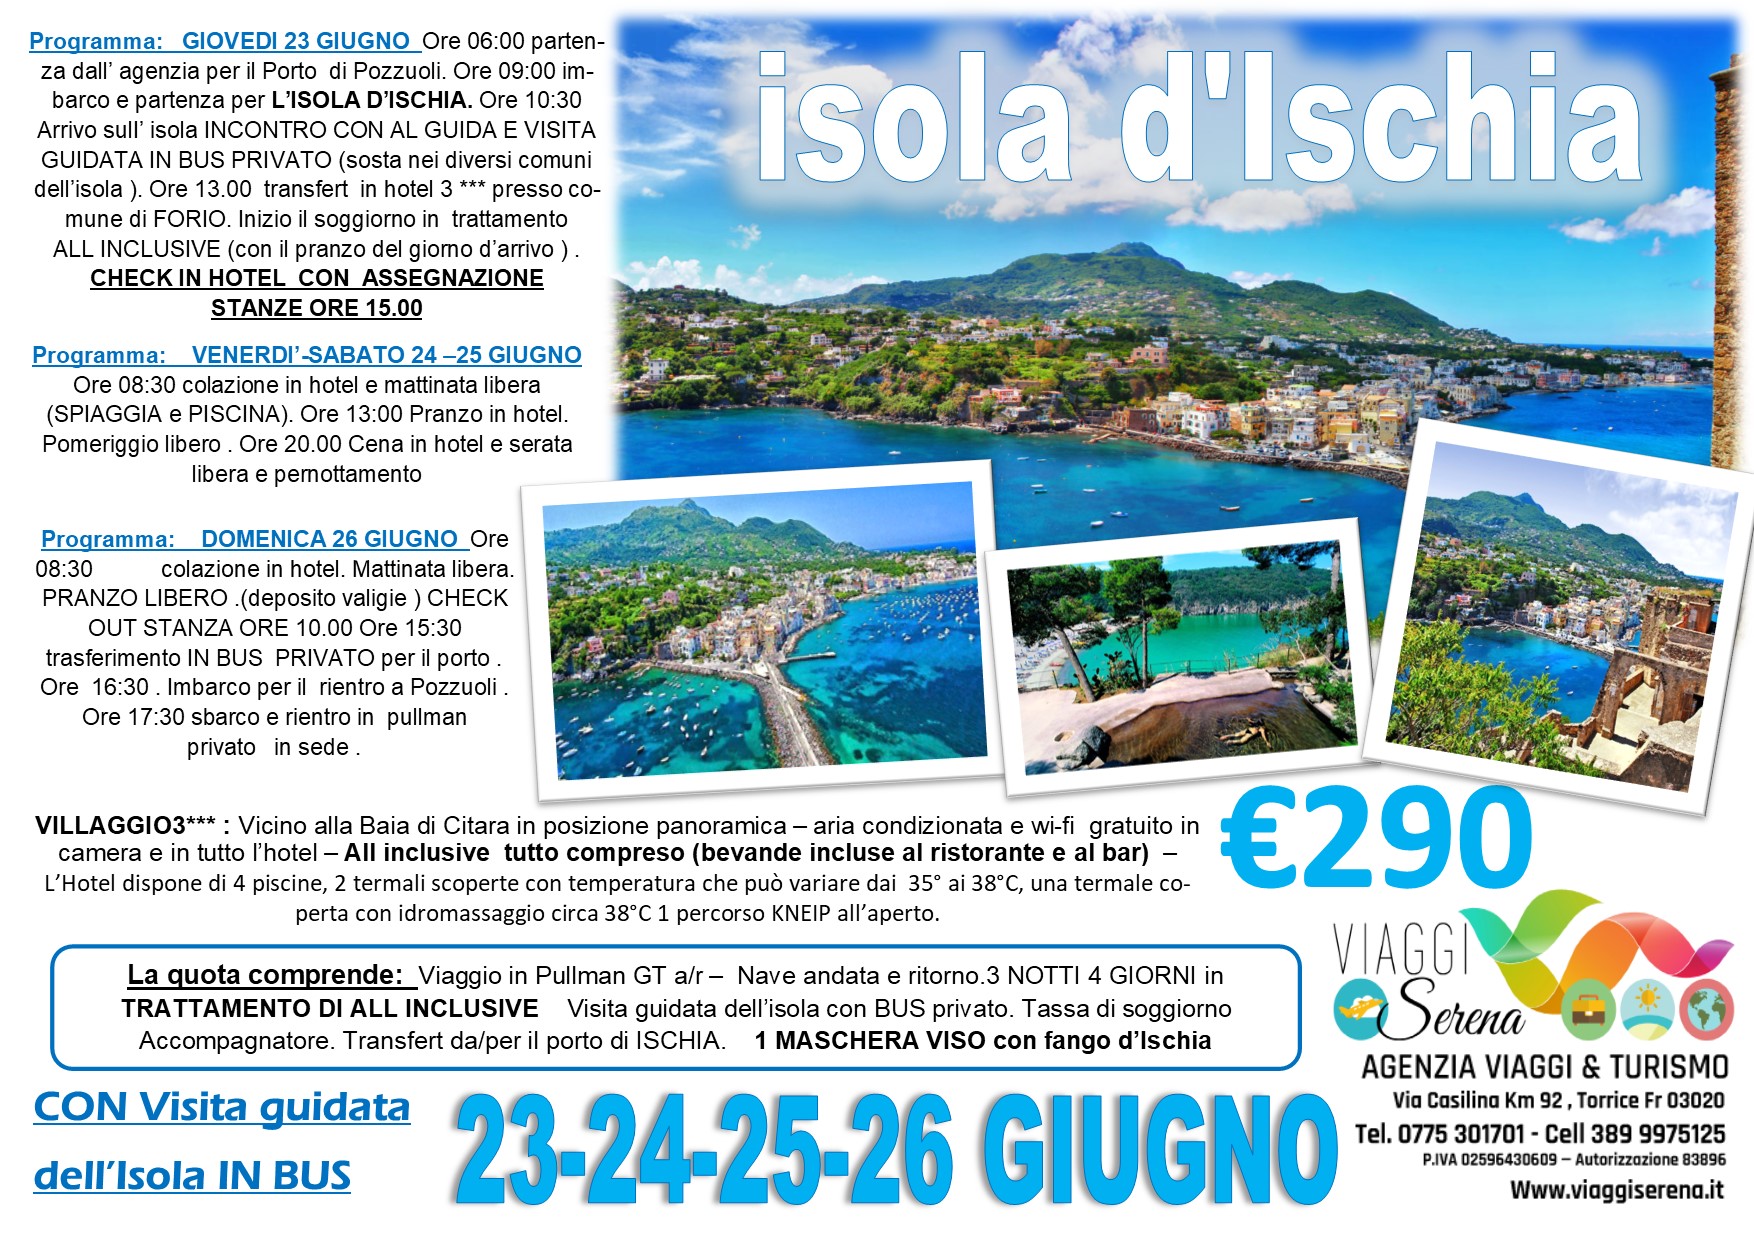 Viaggi di Gruppo: Isola d’ISCHIA 23-24-25-26 Giugno € 290,00